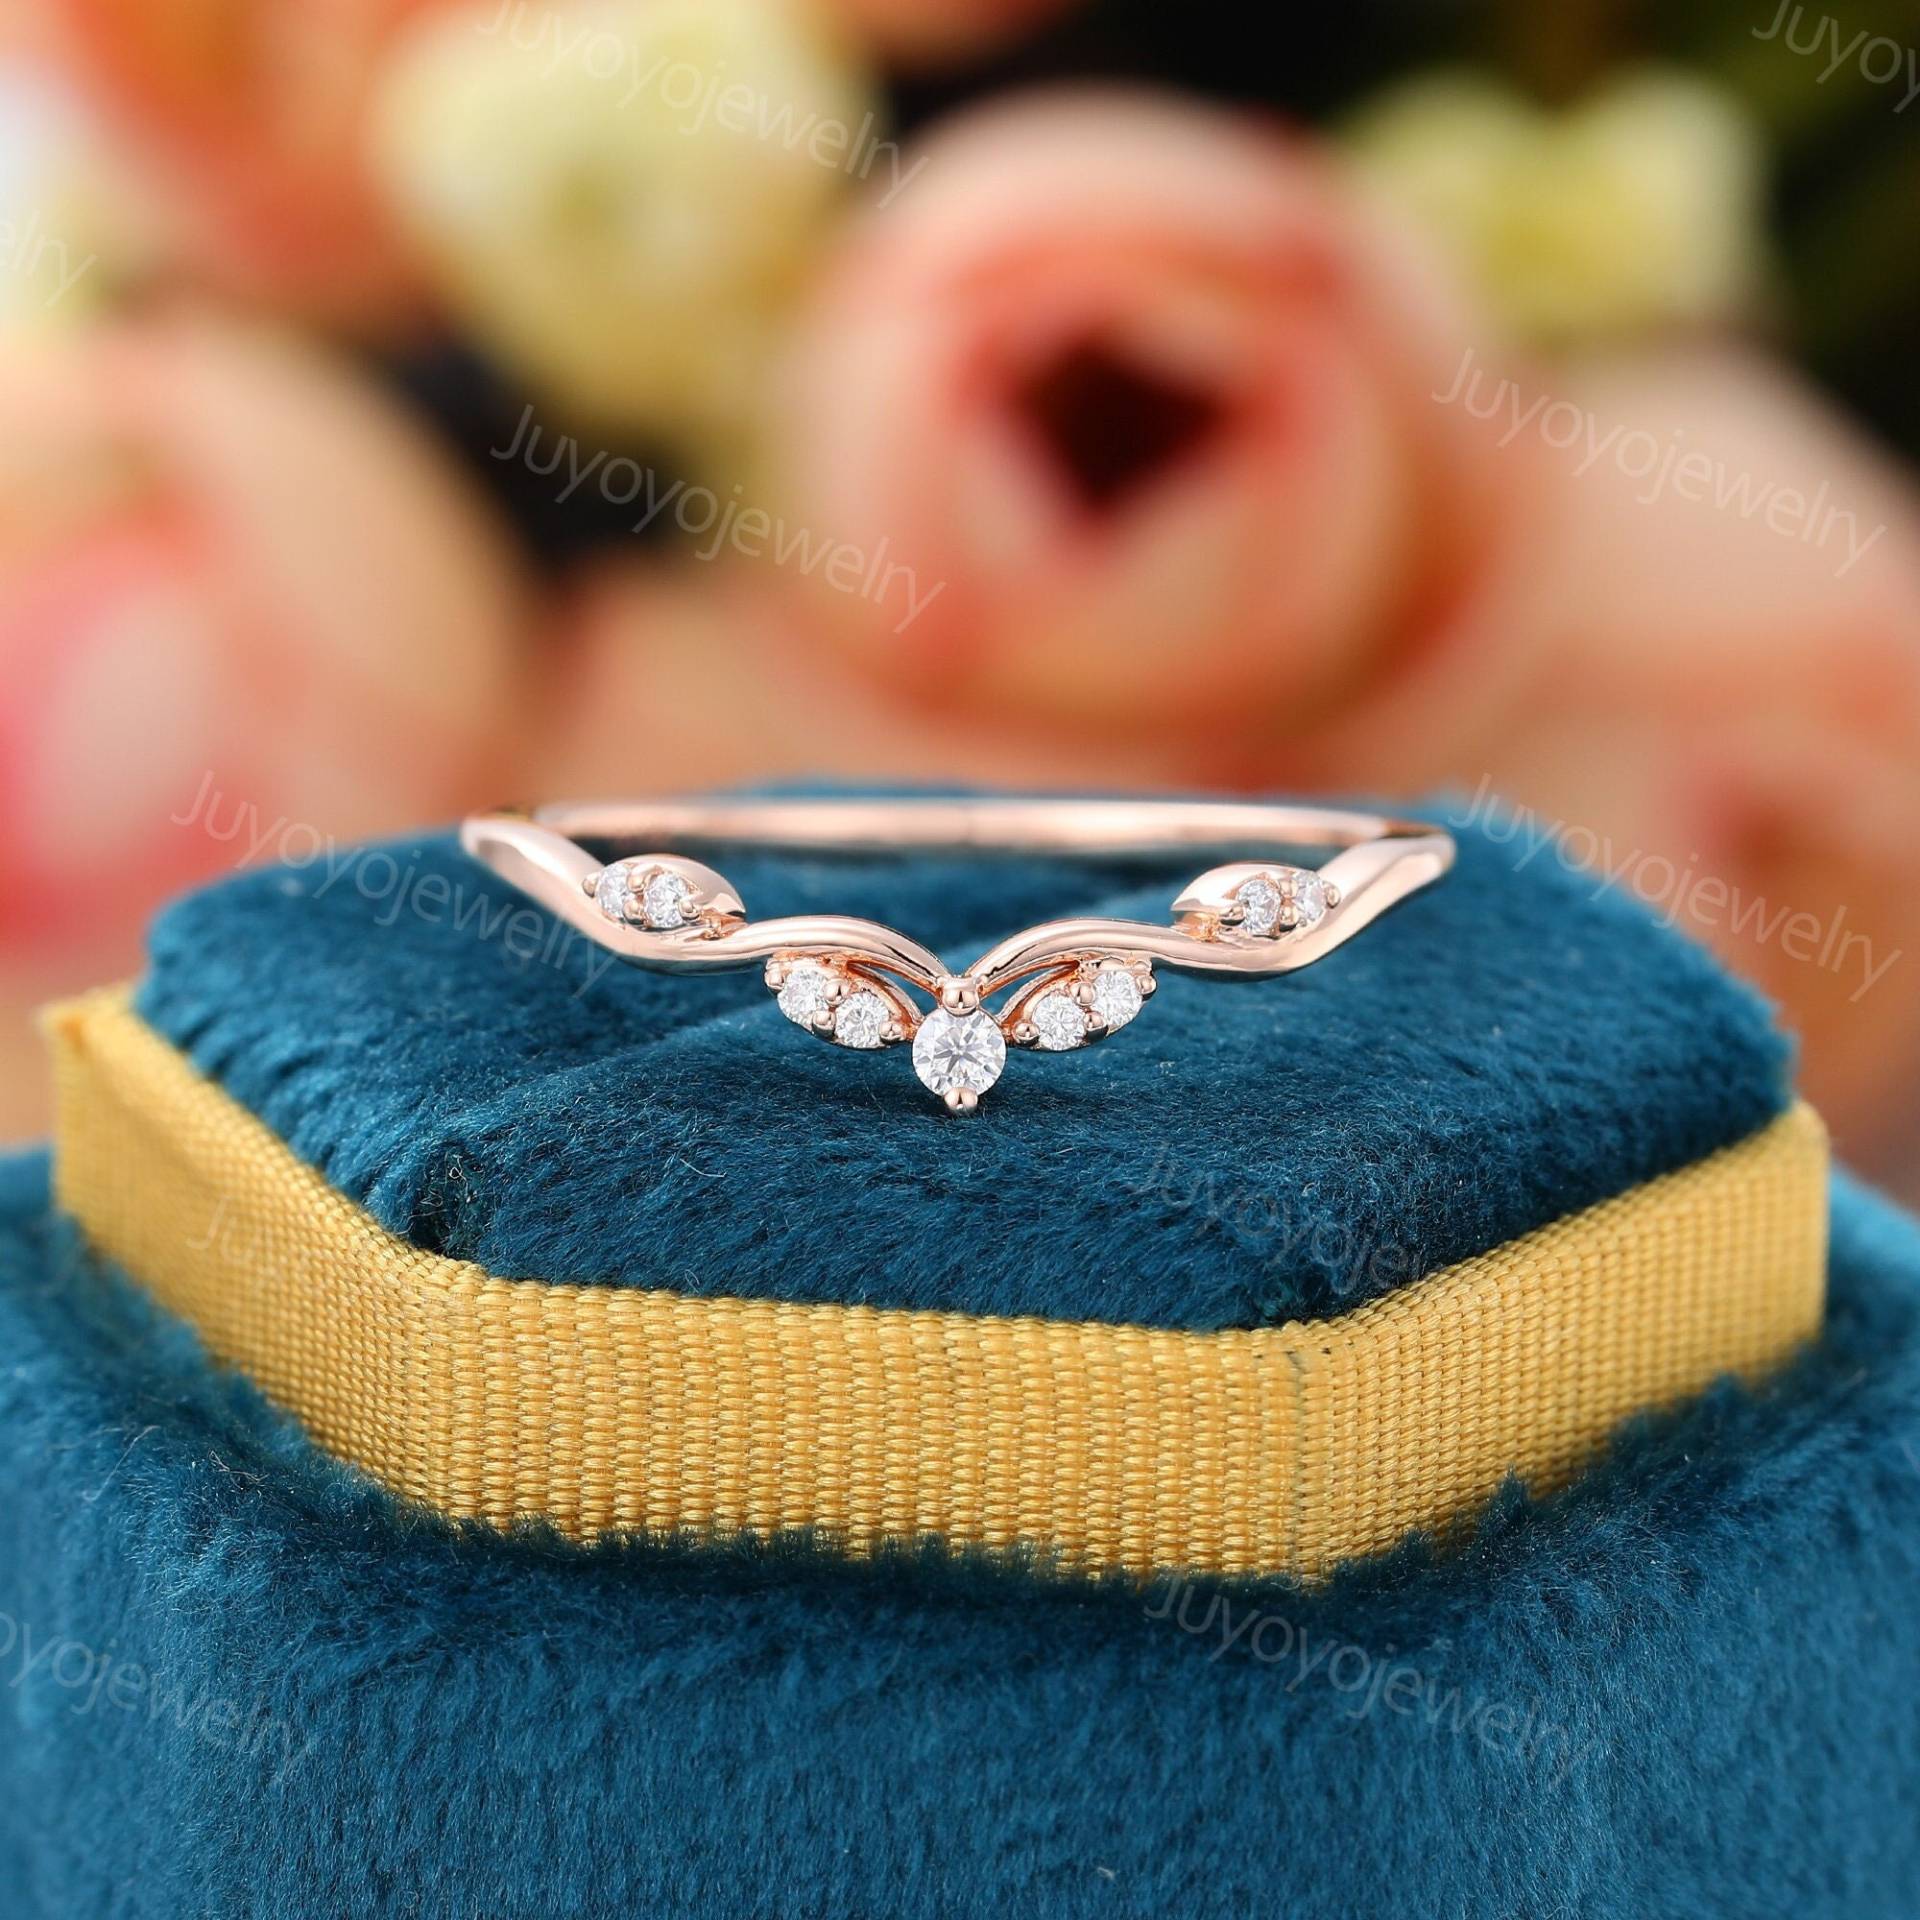 Einzigartiger Curved Moissanit Ehering Vintage Rosegold Trauring Diamant Zierlicher Brautring Passender Hochzeit Stapelring Für Frauen von Juyoyojewelry